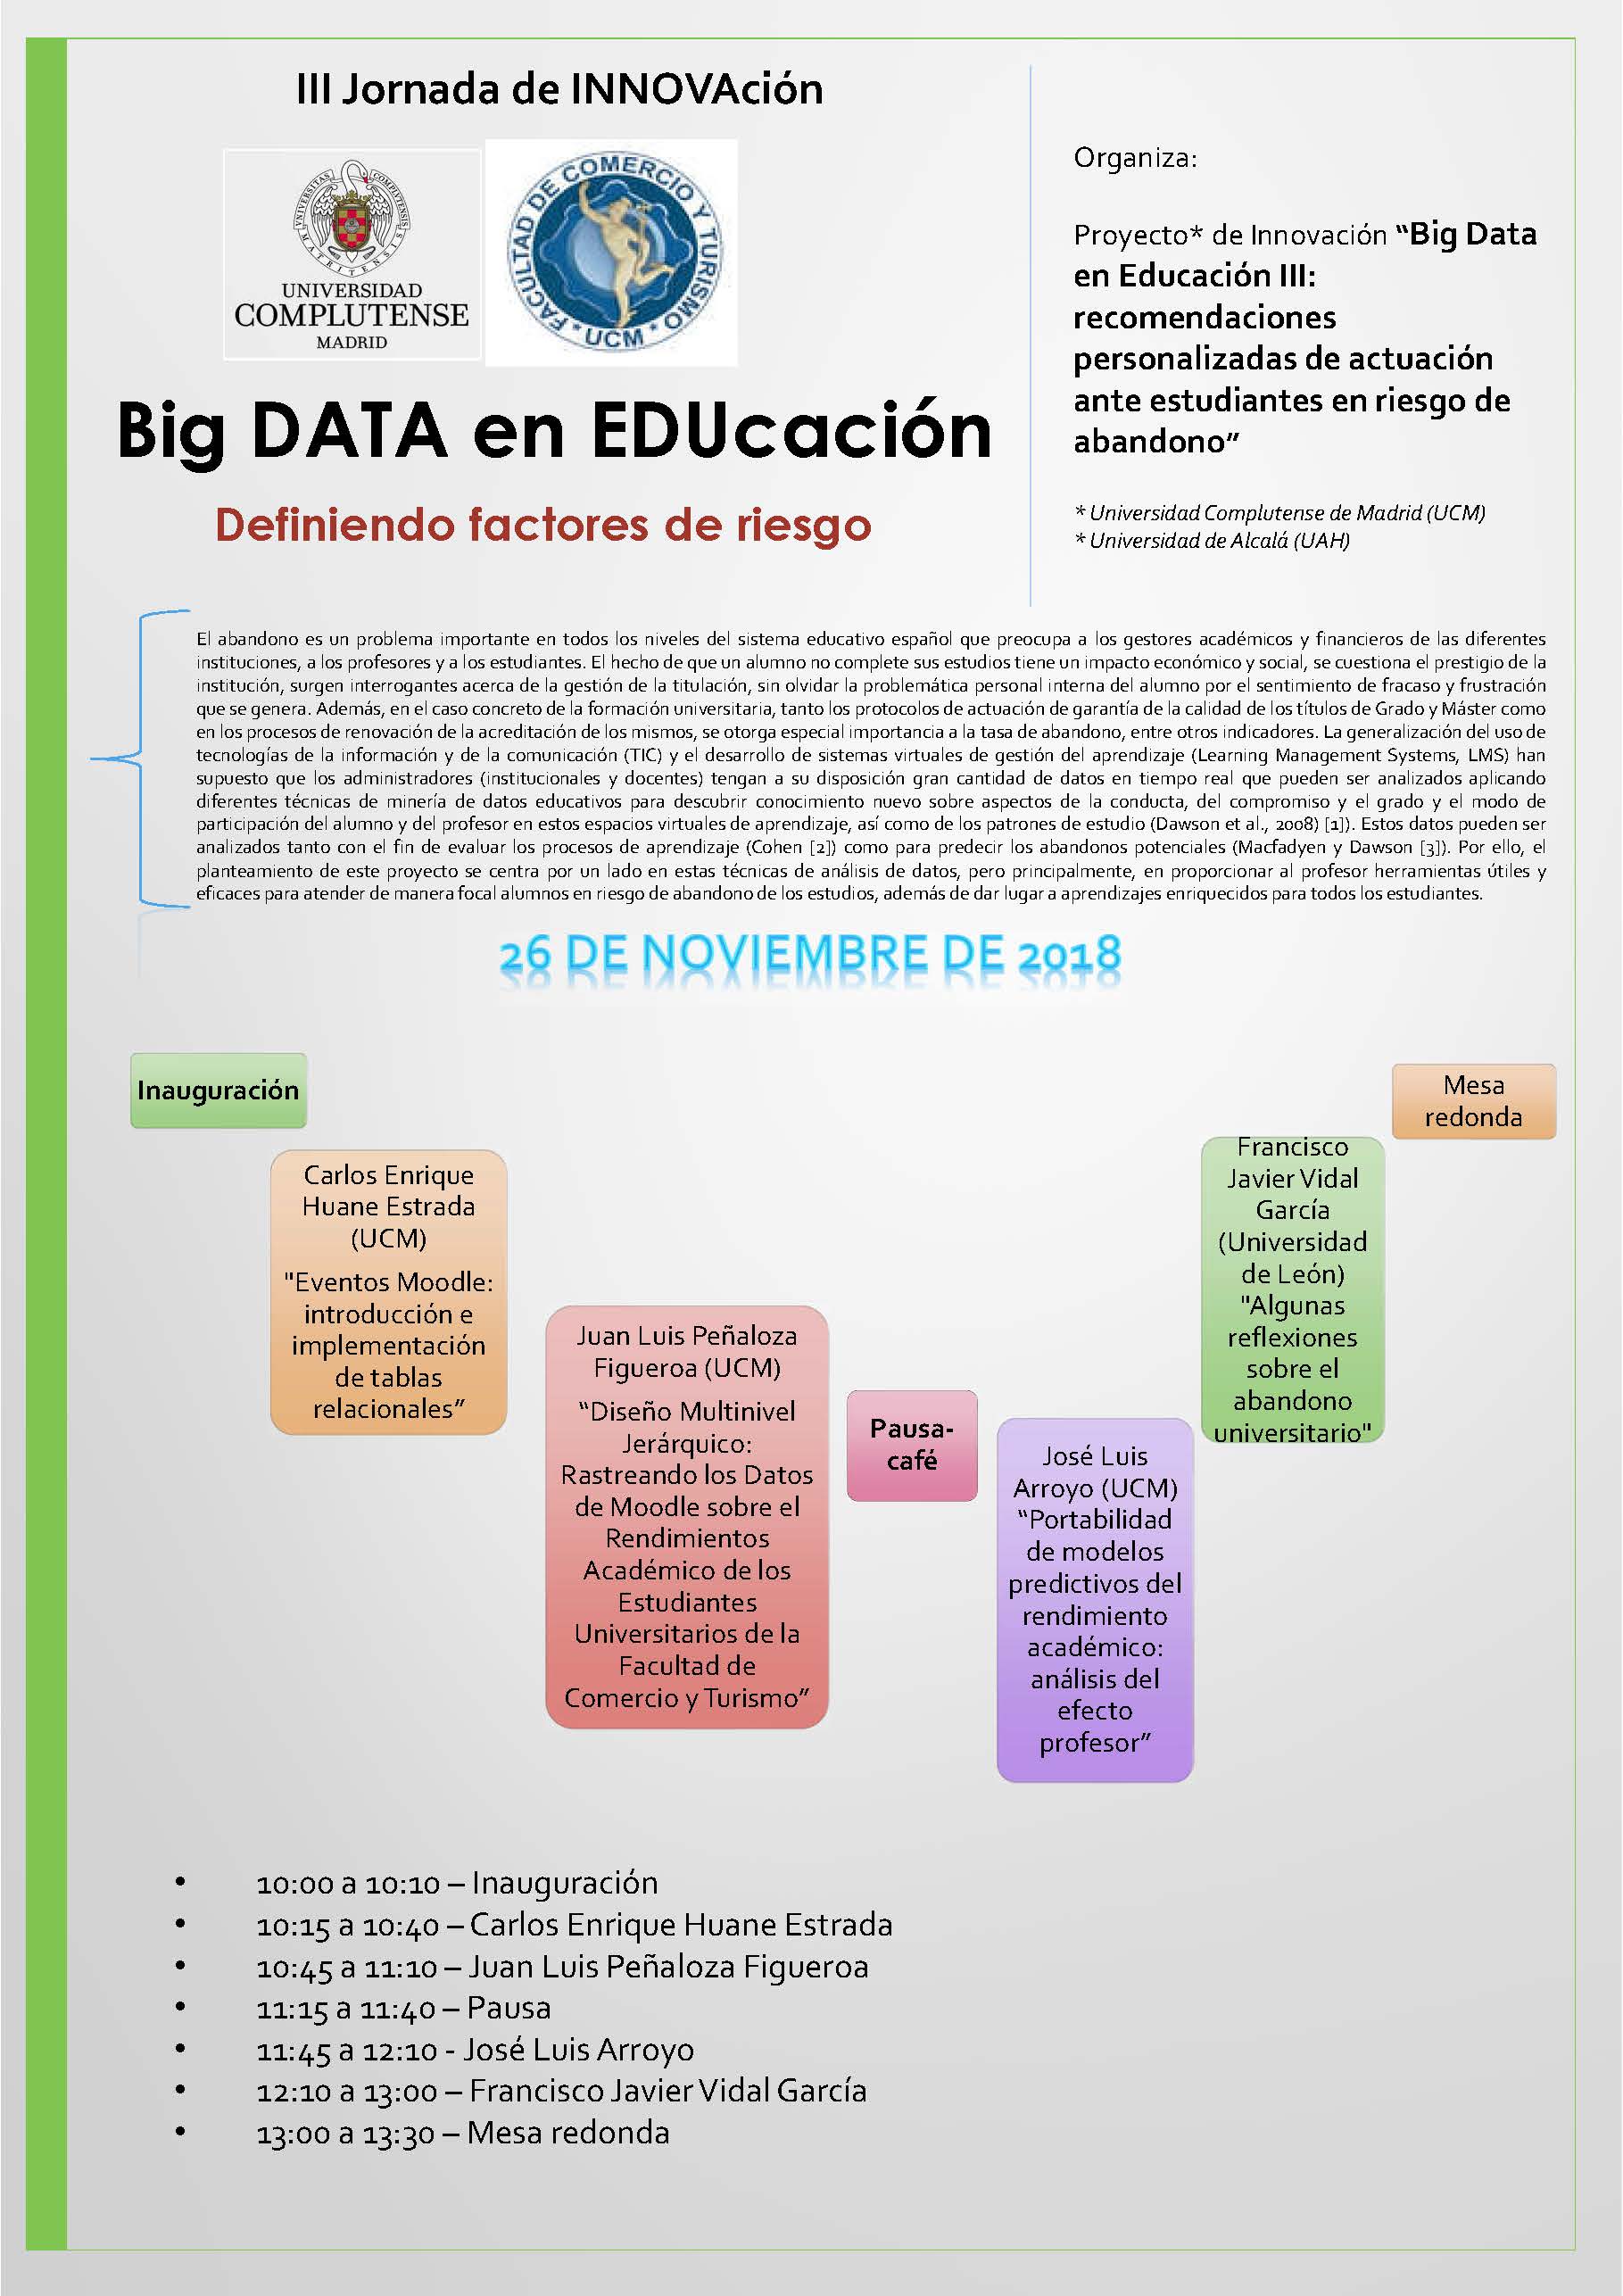 III JORNADA DE INNOVACIÓN  BIG-DATA en EDUCACIÓN: Definiendo factores de riesgo    - 2